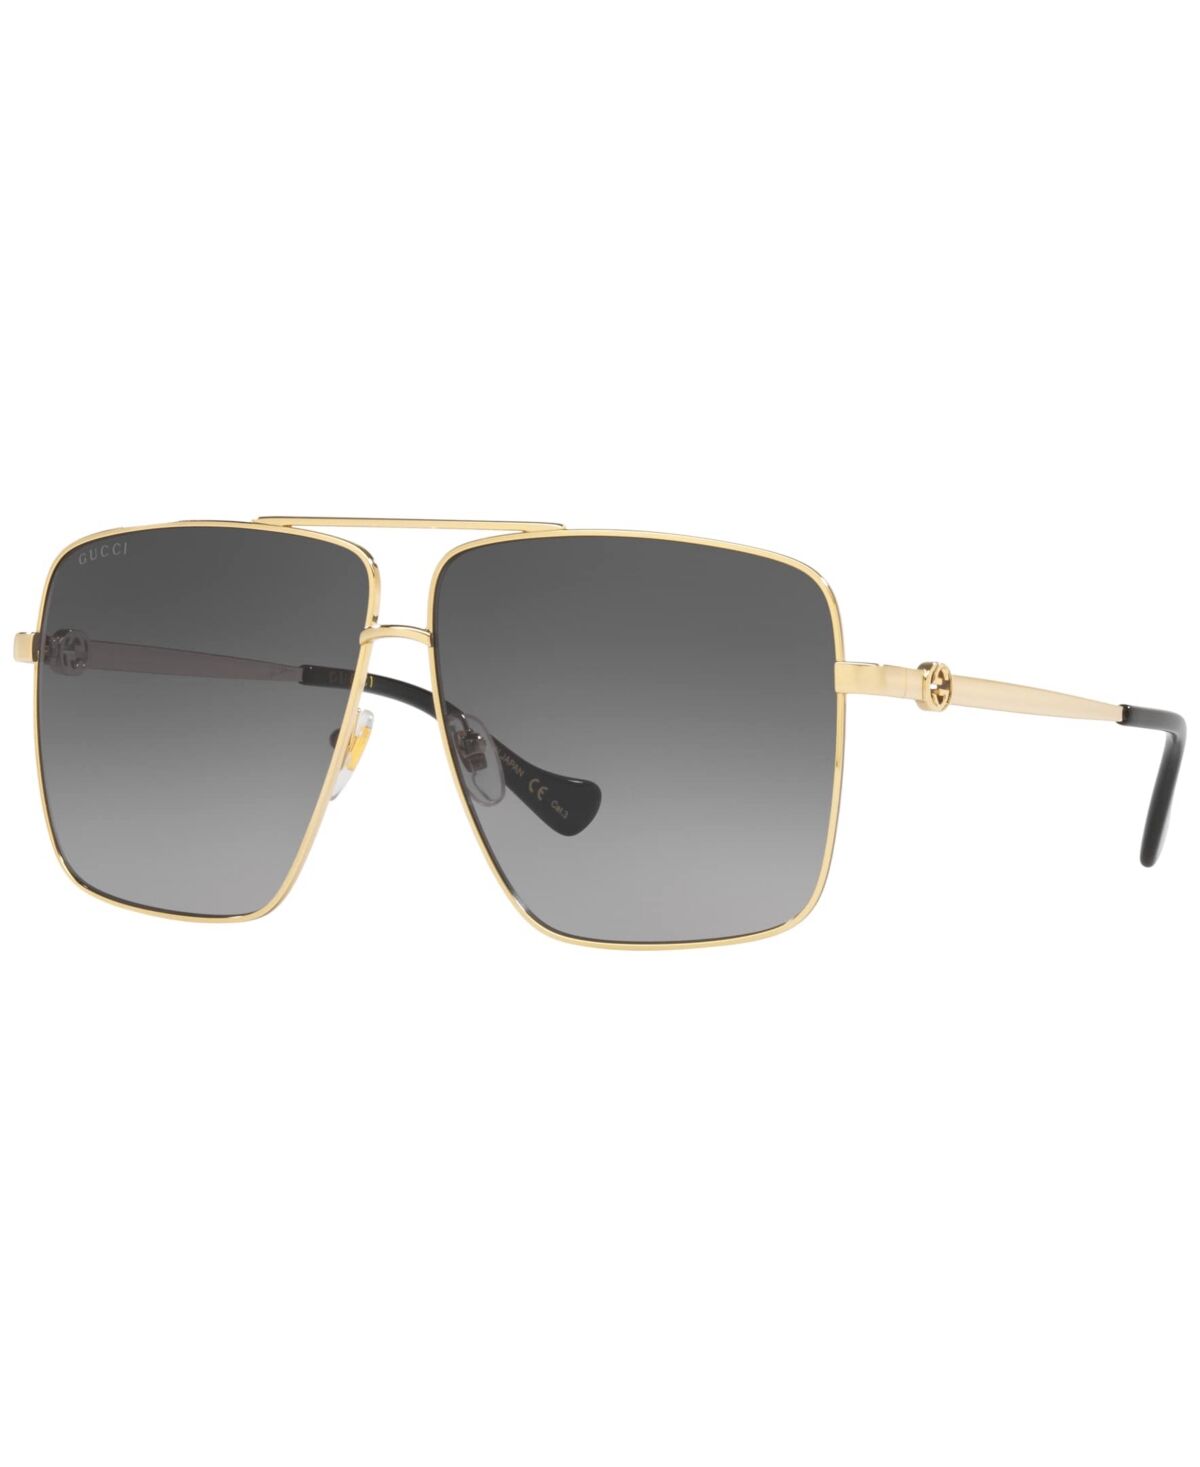 Gucci Women's Sunglasses, GC00181564-x - Gold-Tone